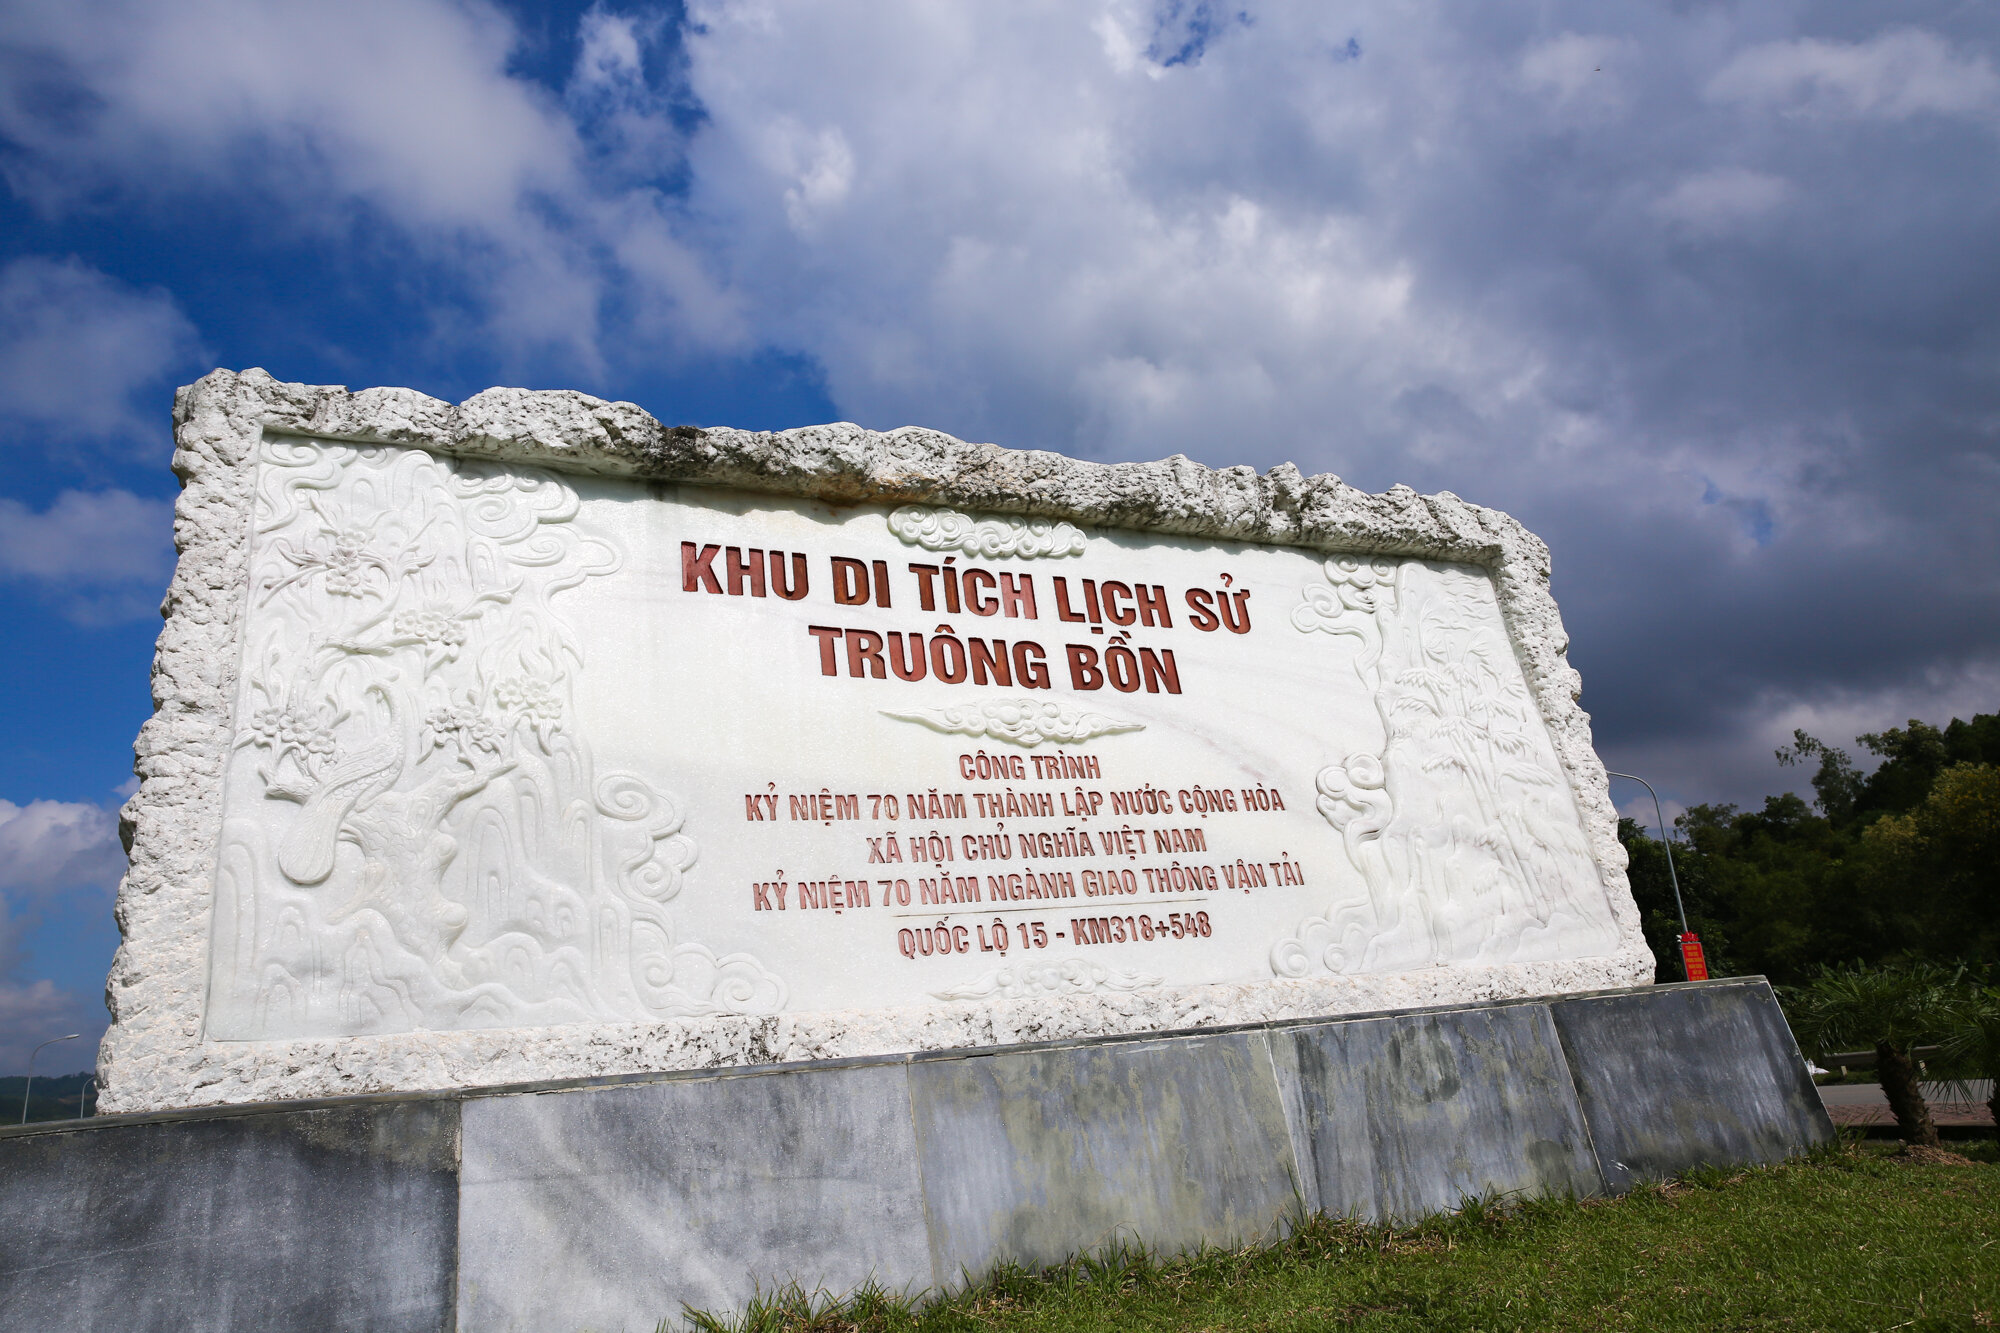 Khu di tích lịch sử Truông Bồn nằm ở vị trí địa lý thuận lợi, thu hút nhiều du khách ghé thăm. (Ảnh: Báo Nghệ An)